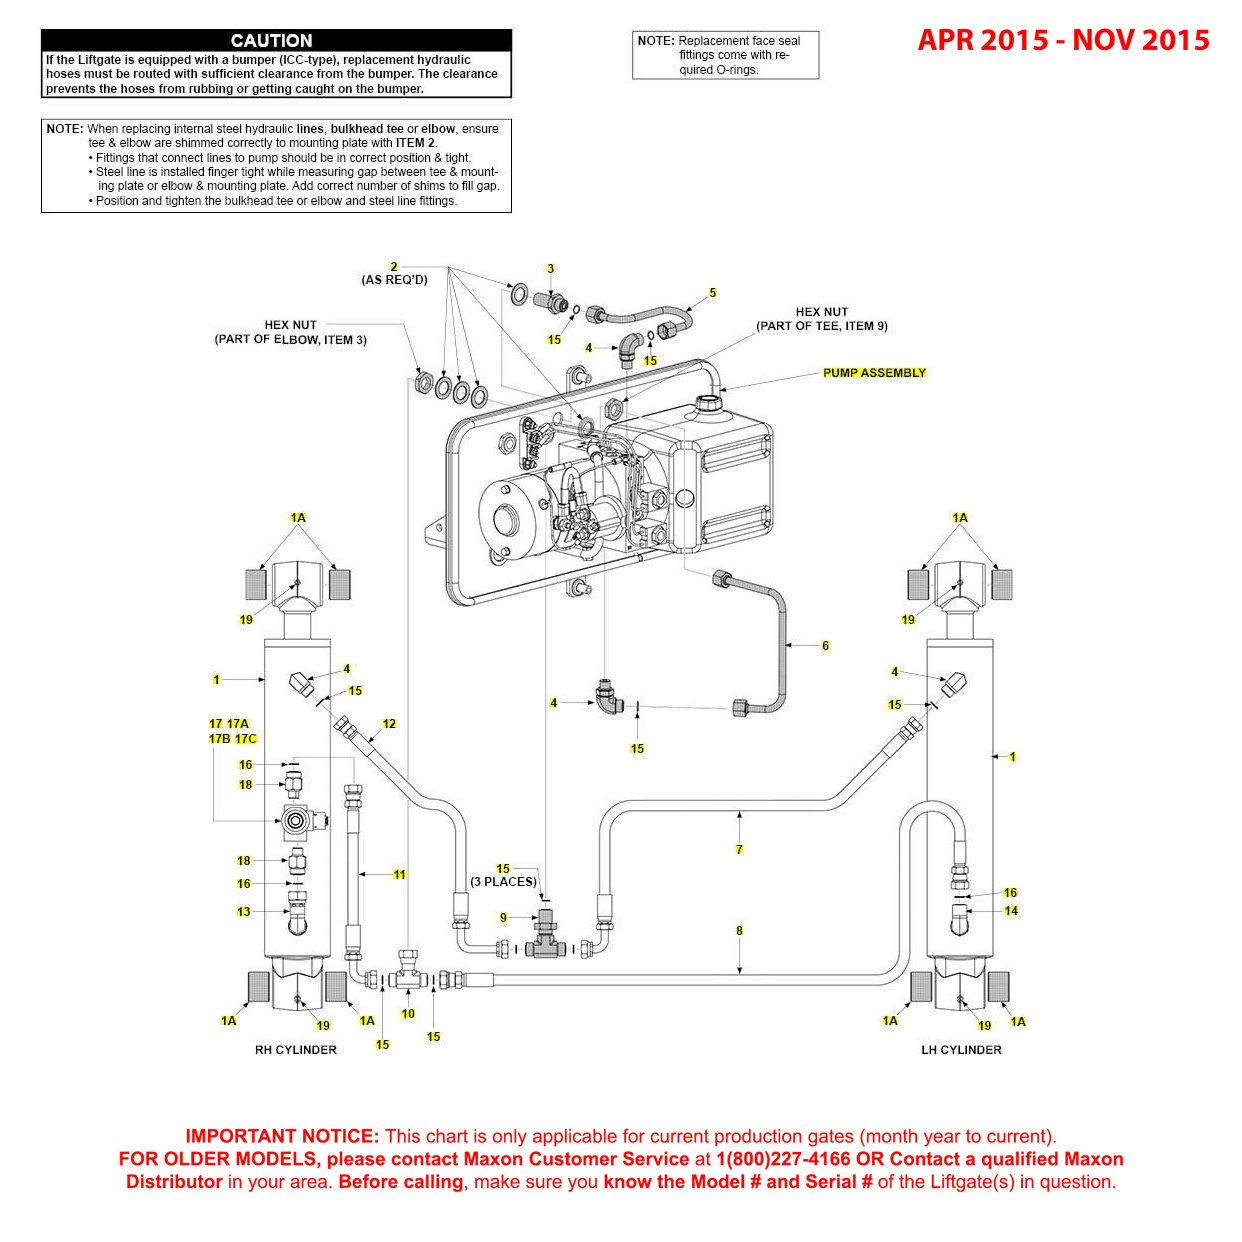 Maxon GPT (Apr 2015 - Nov 2015) Power Down Hydraulic Systems Diagram